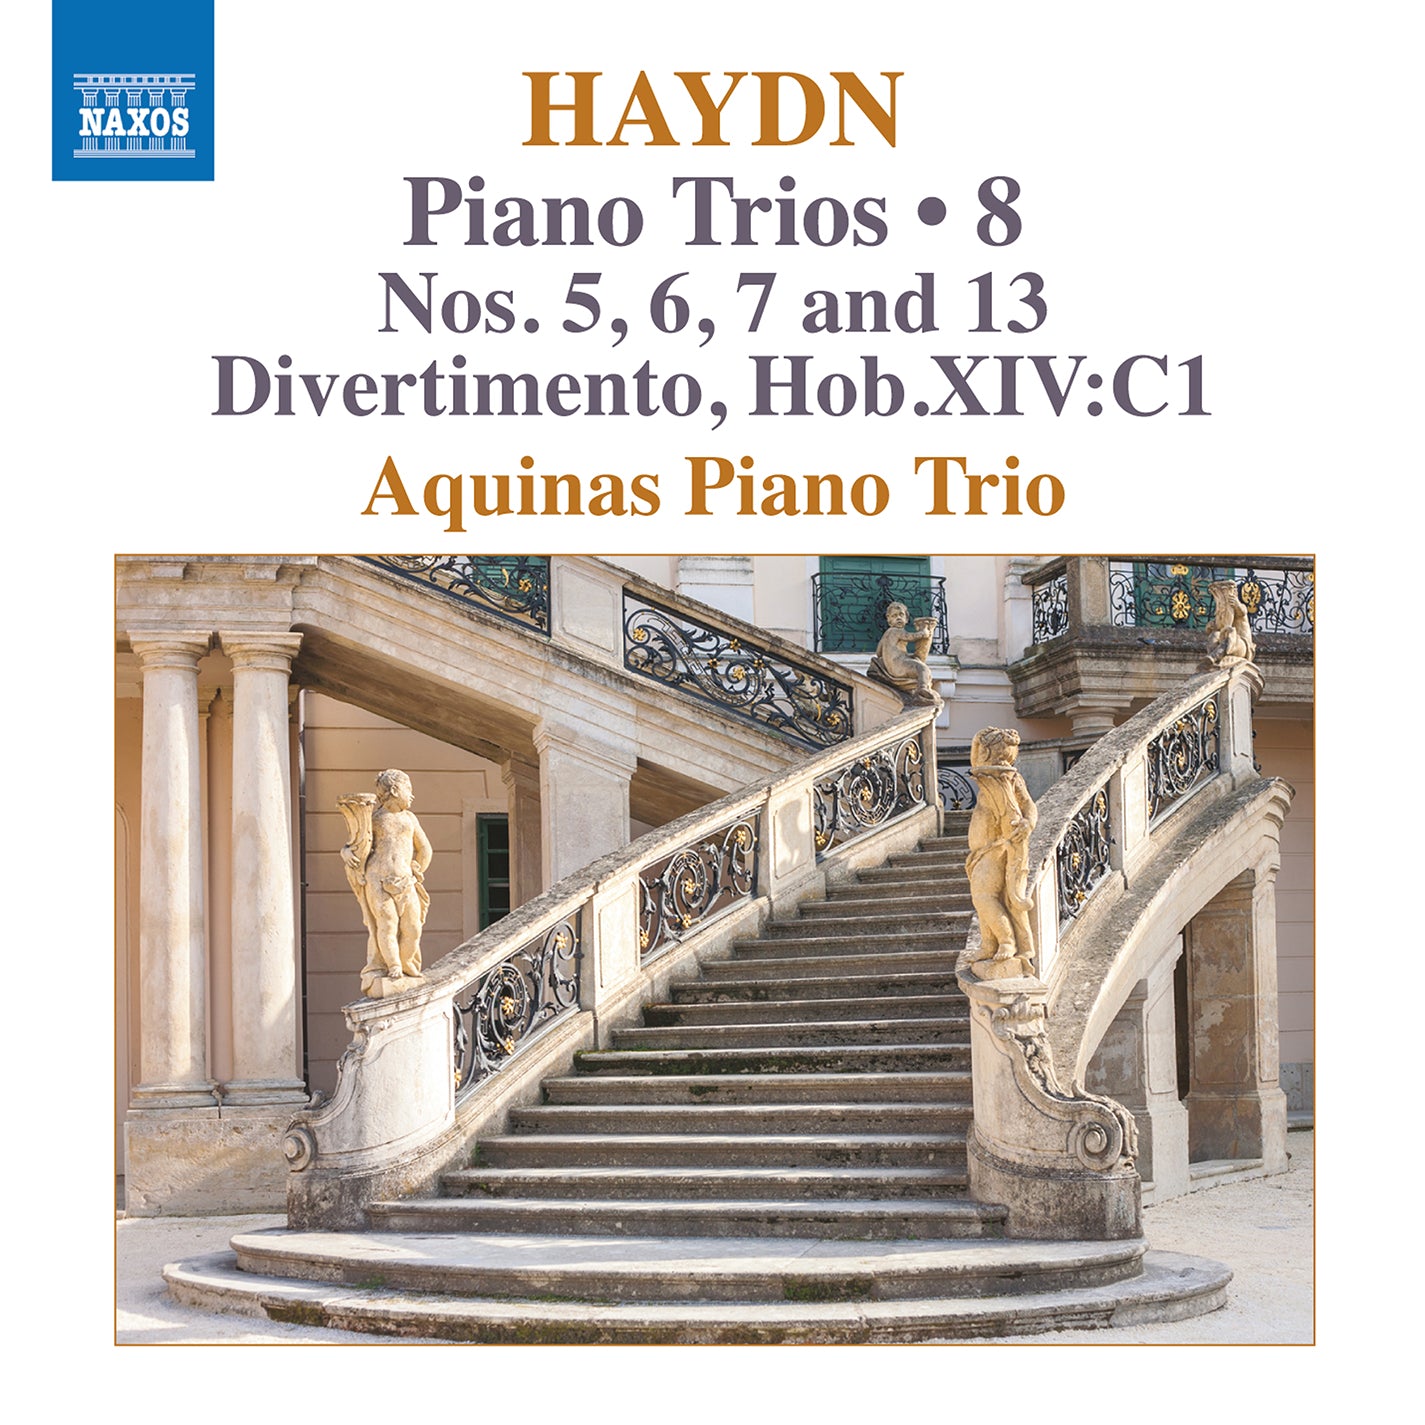 Haydn: Piano Trios, Vol. 8 / Aquinas Piano Trio